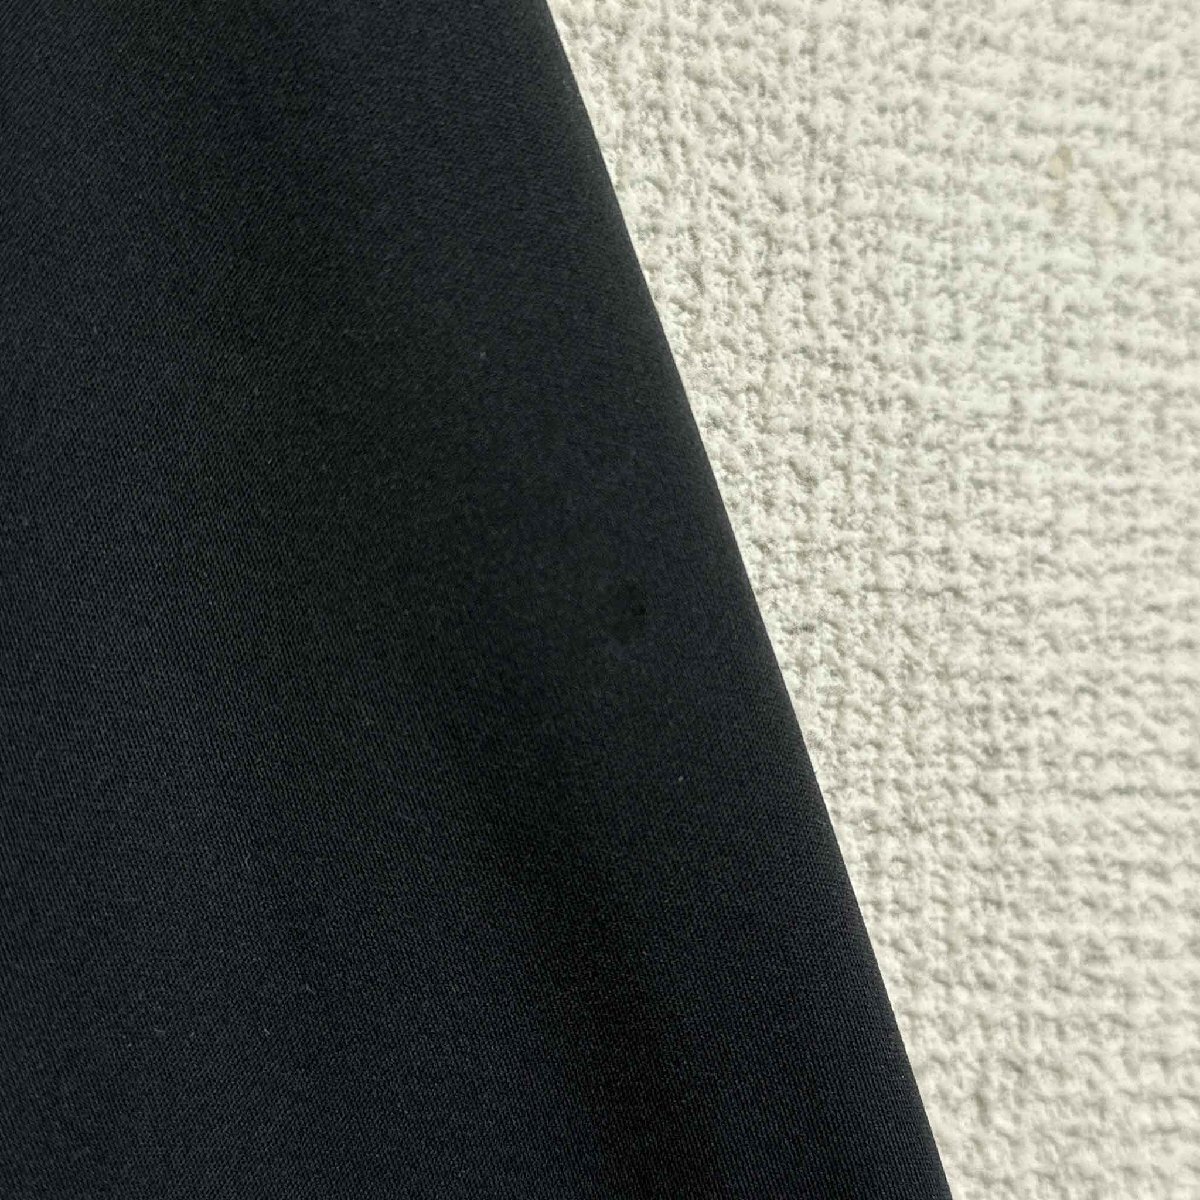 mizuno Mizuno длинный рукав джерси черный размер M полный Zip обратная сторона ворсистый tops мужской Vintage спорт 6